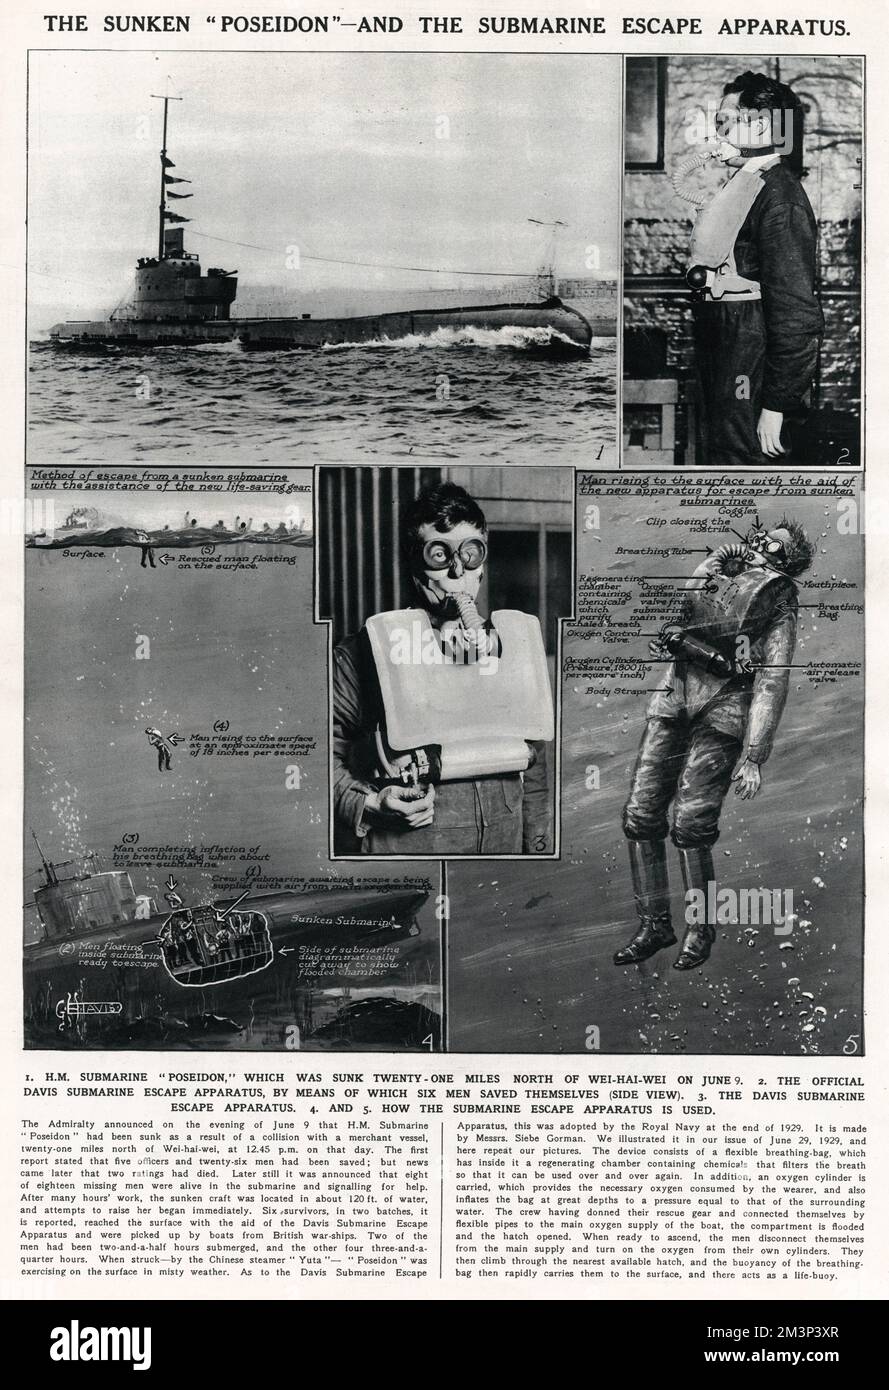 HMS Poseidon und das U-Boot-Fluchtgerät. Poseidon wurde am 9. Juni 1931 nach einem Zusammenstoß mit dem chinesischen Handelsdampfer SS Yuta versenkt. Das Davis-U-Boot (oder Tauchgerät) war an Bord, mit dem sich sechs Männer retteten. Die Diagramme zeigen, wie das Gerät verwendet wird. Stockfoto